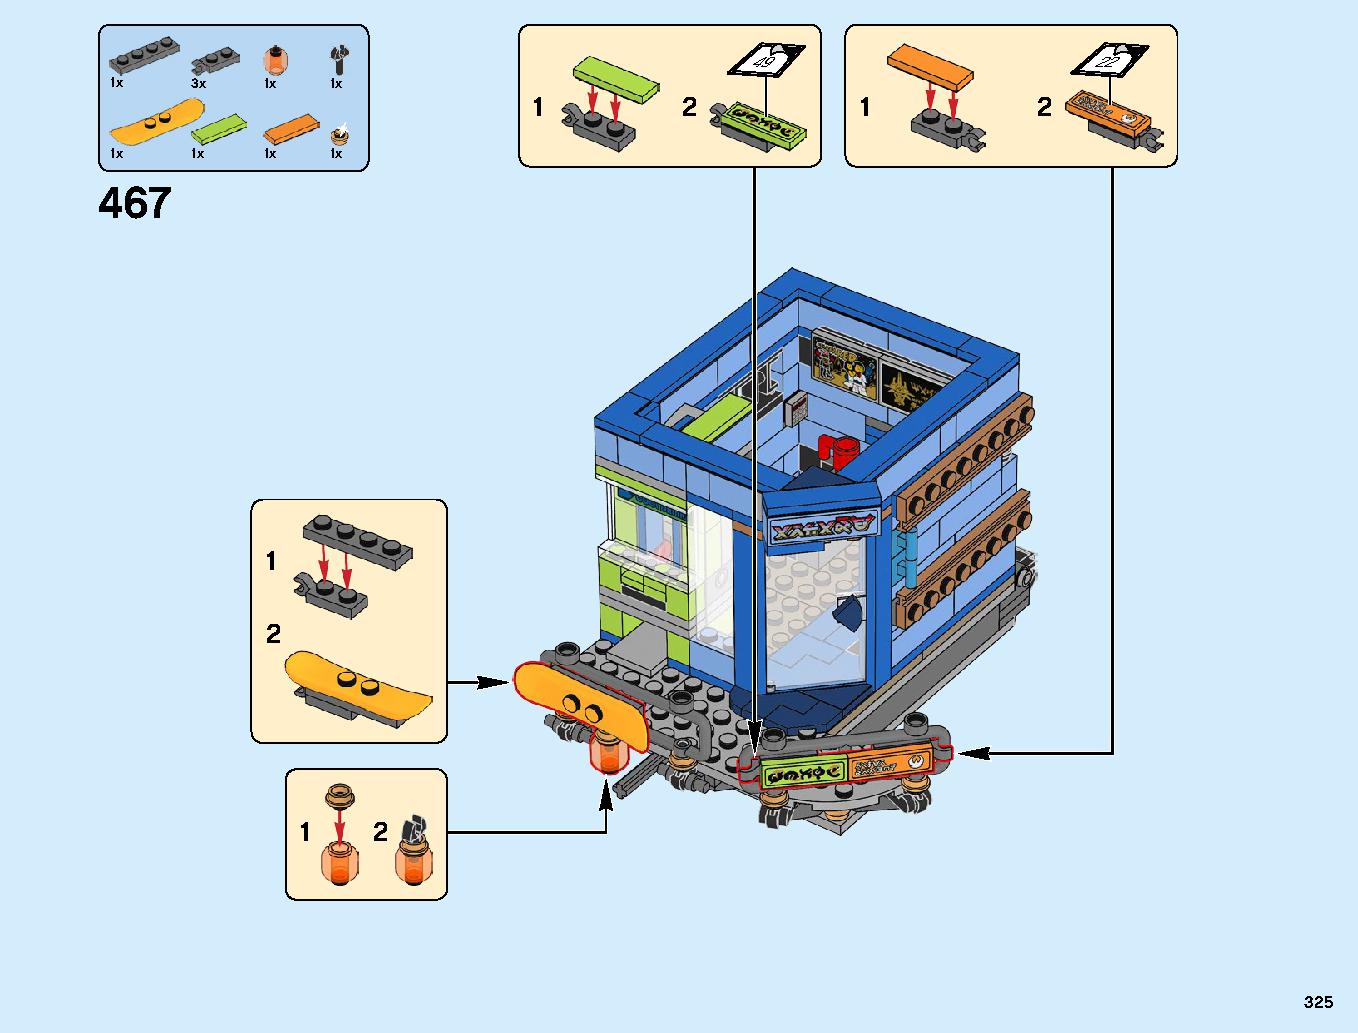 ニンジャゴーシティ・ポートパーク 70657 レゴの商品情報 レゴの説明書・組立方法 325 page